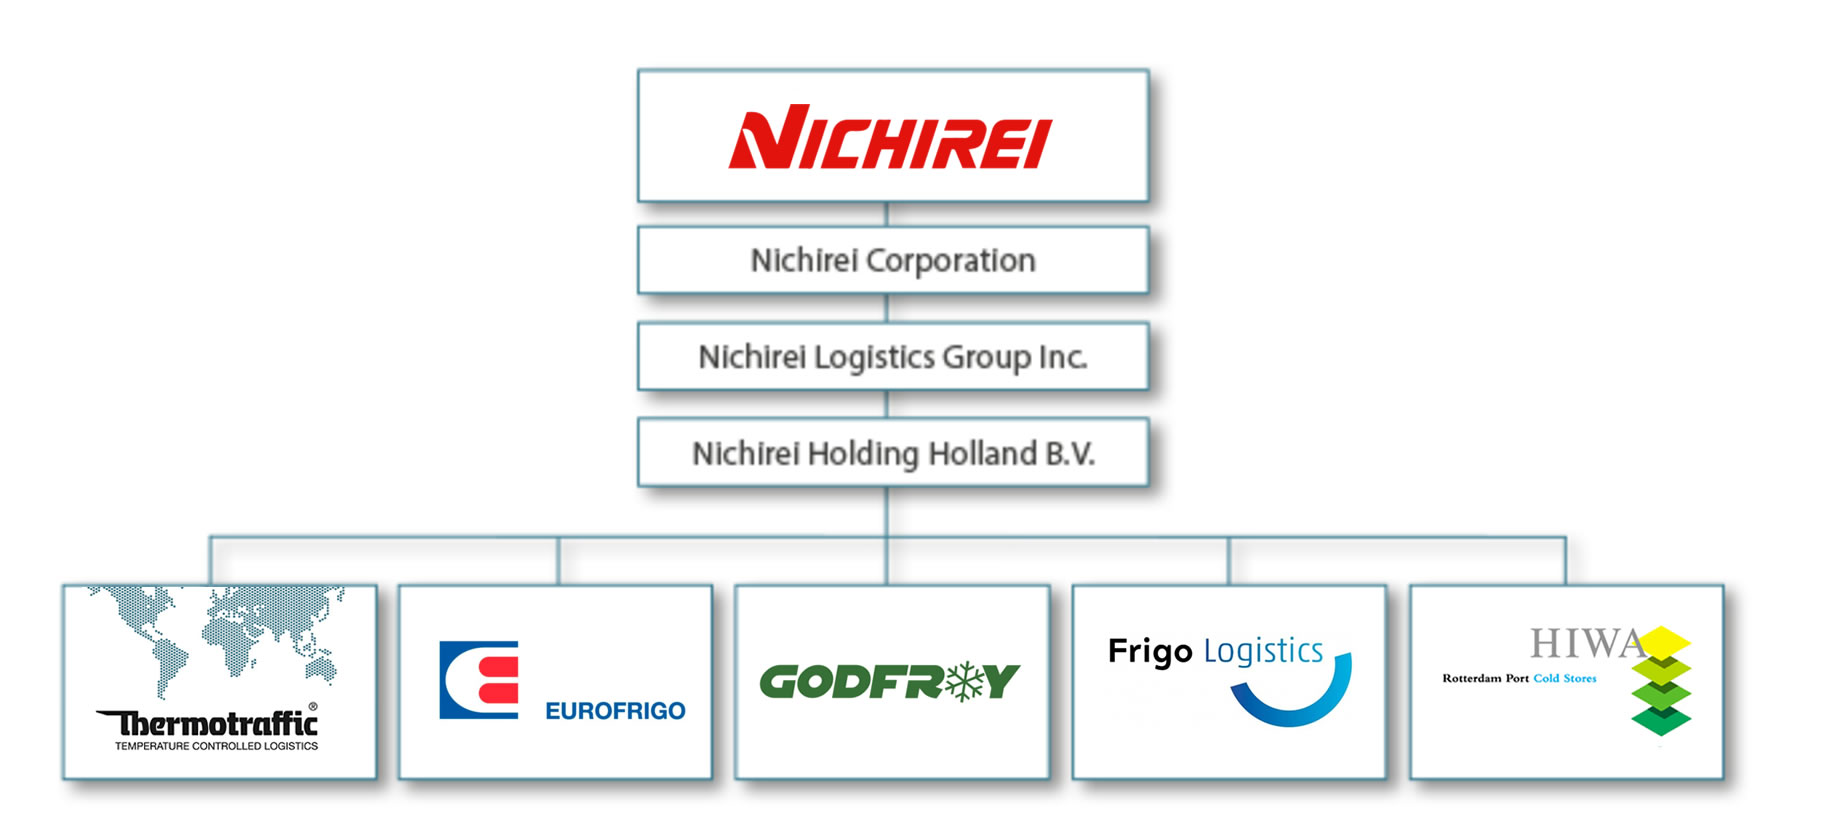 Nichirei Corporation – network in Europe